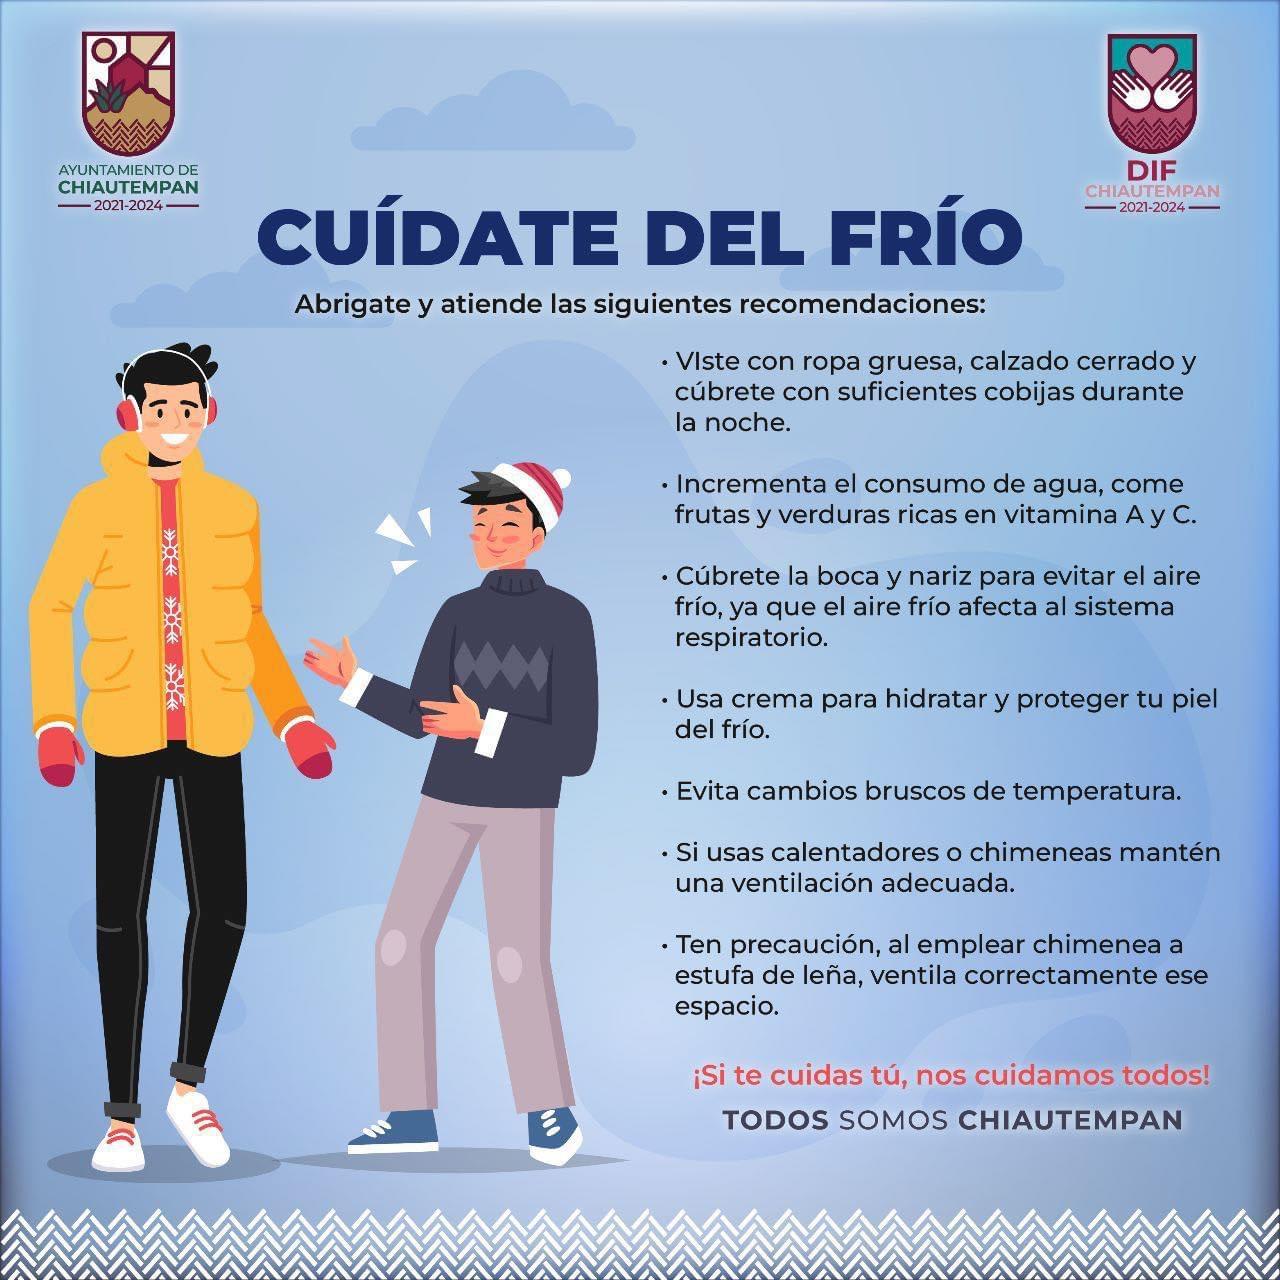 Emite Ayuntamiento de Chiautempan recomendaciones para cuidarse del frío durante esta temporada invernal